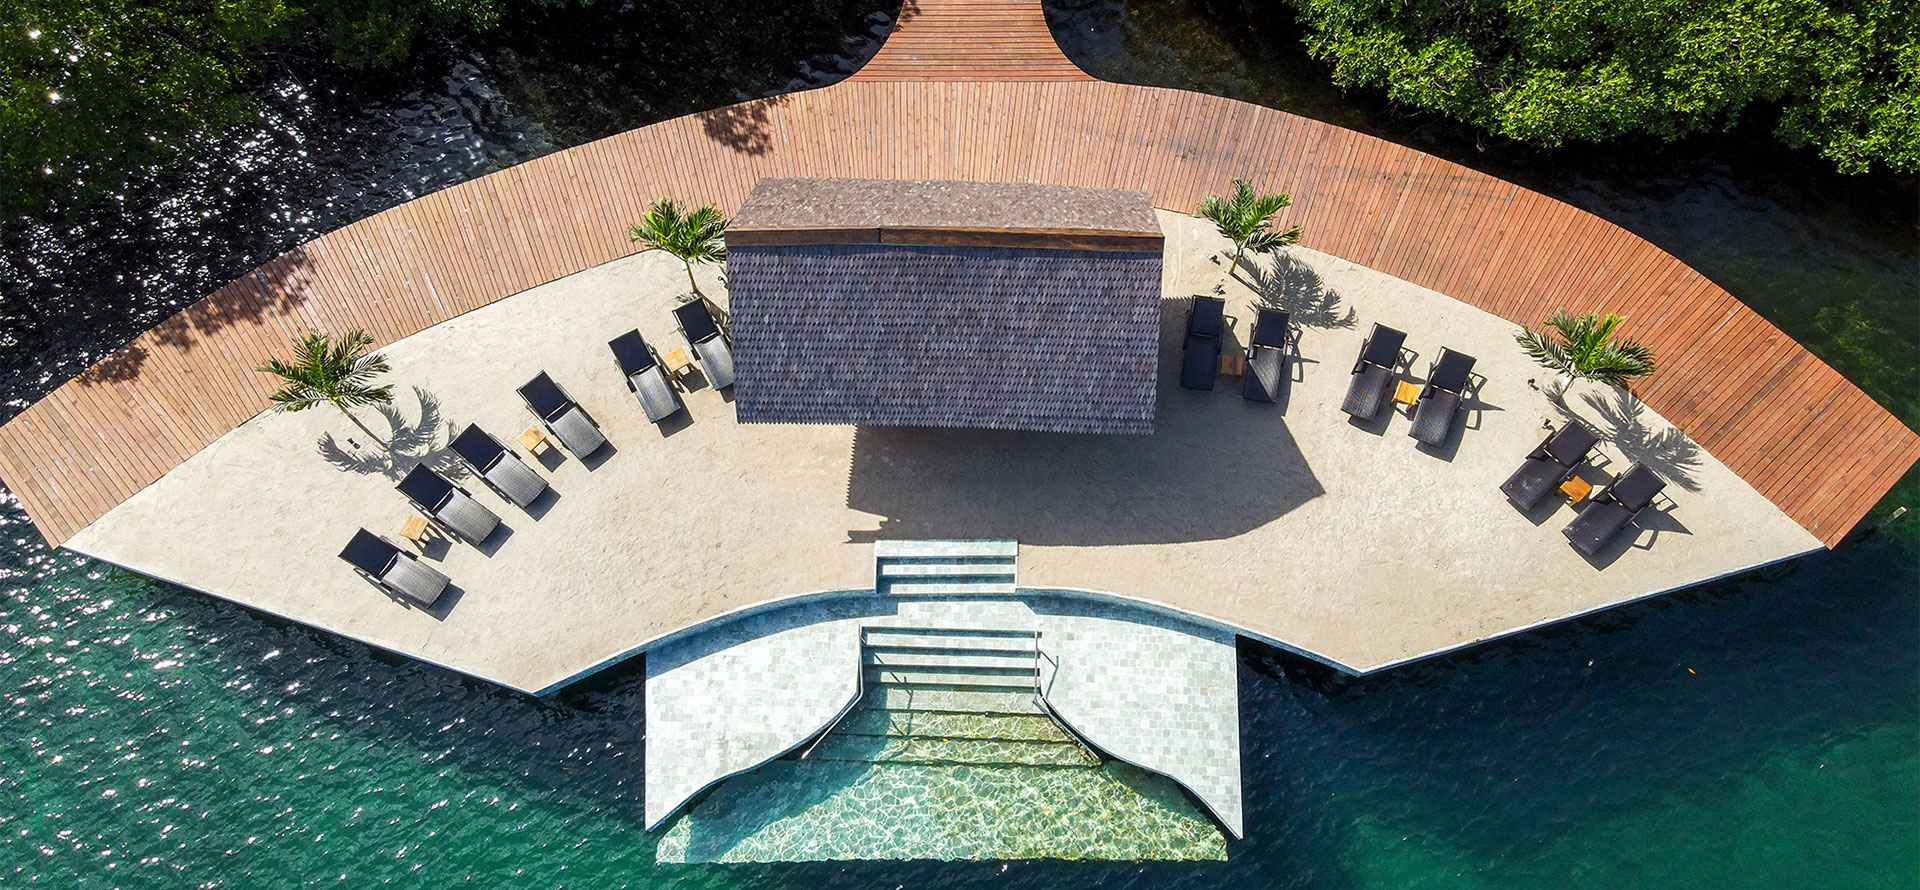 Top view of resort in Panama.